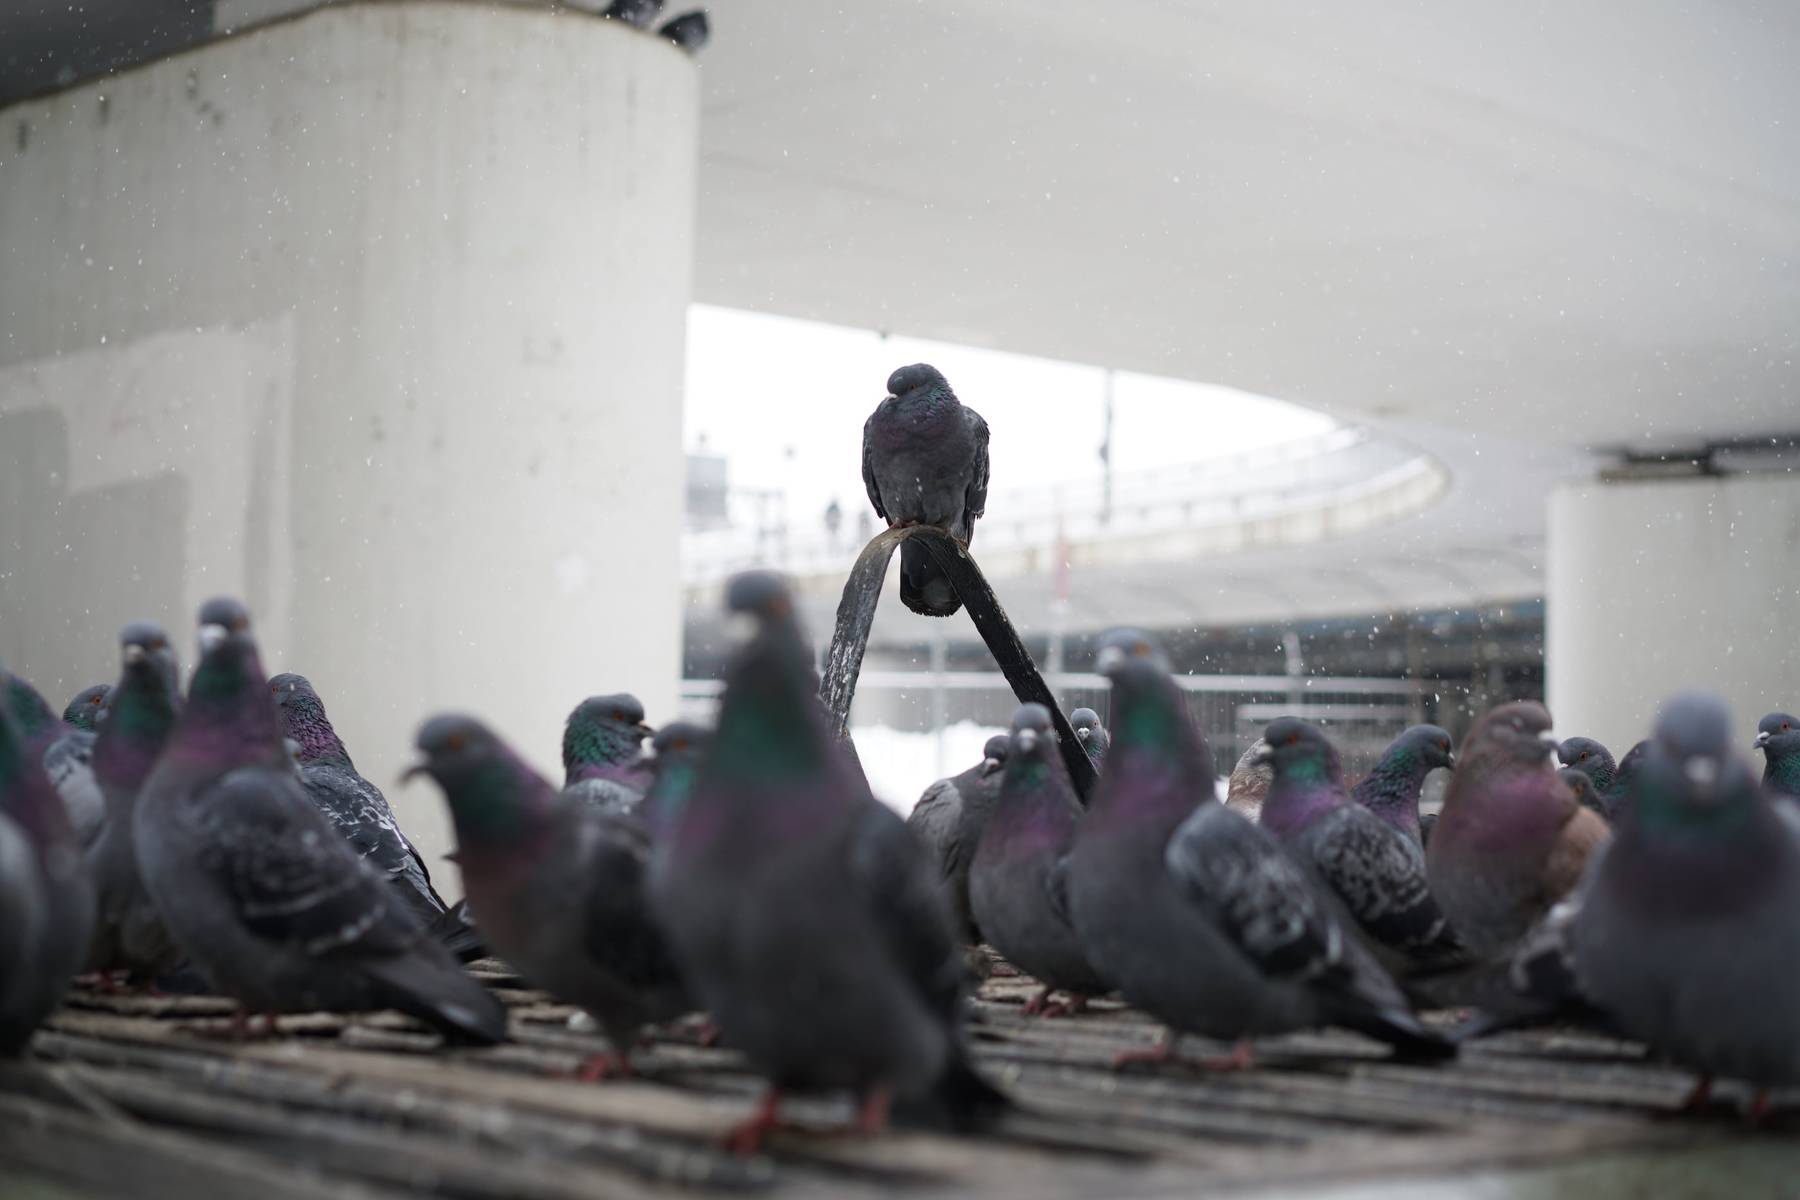 Pigeons standing around